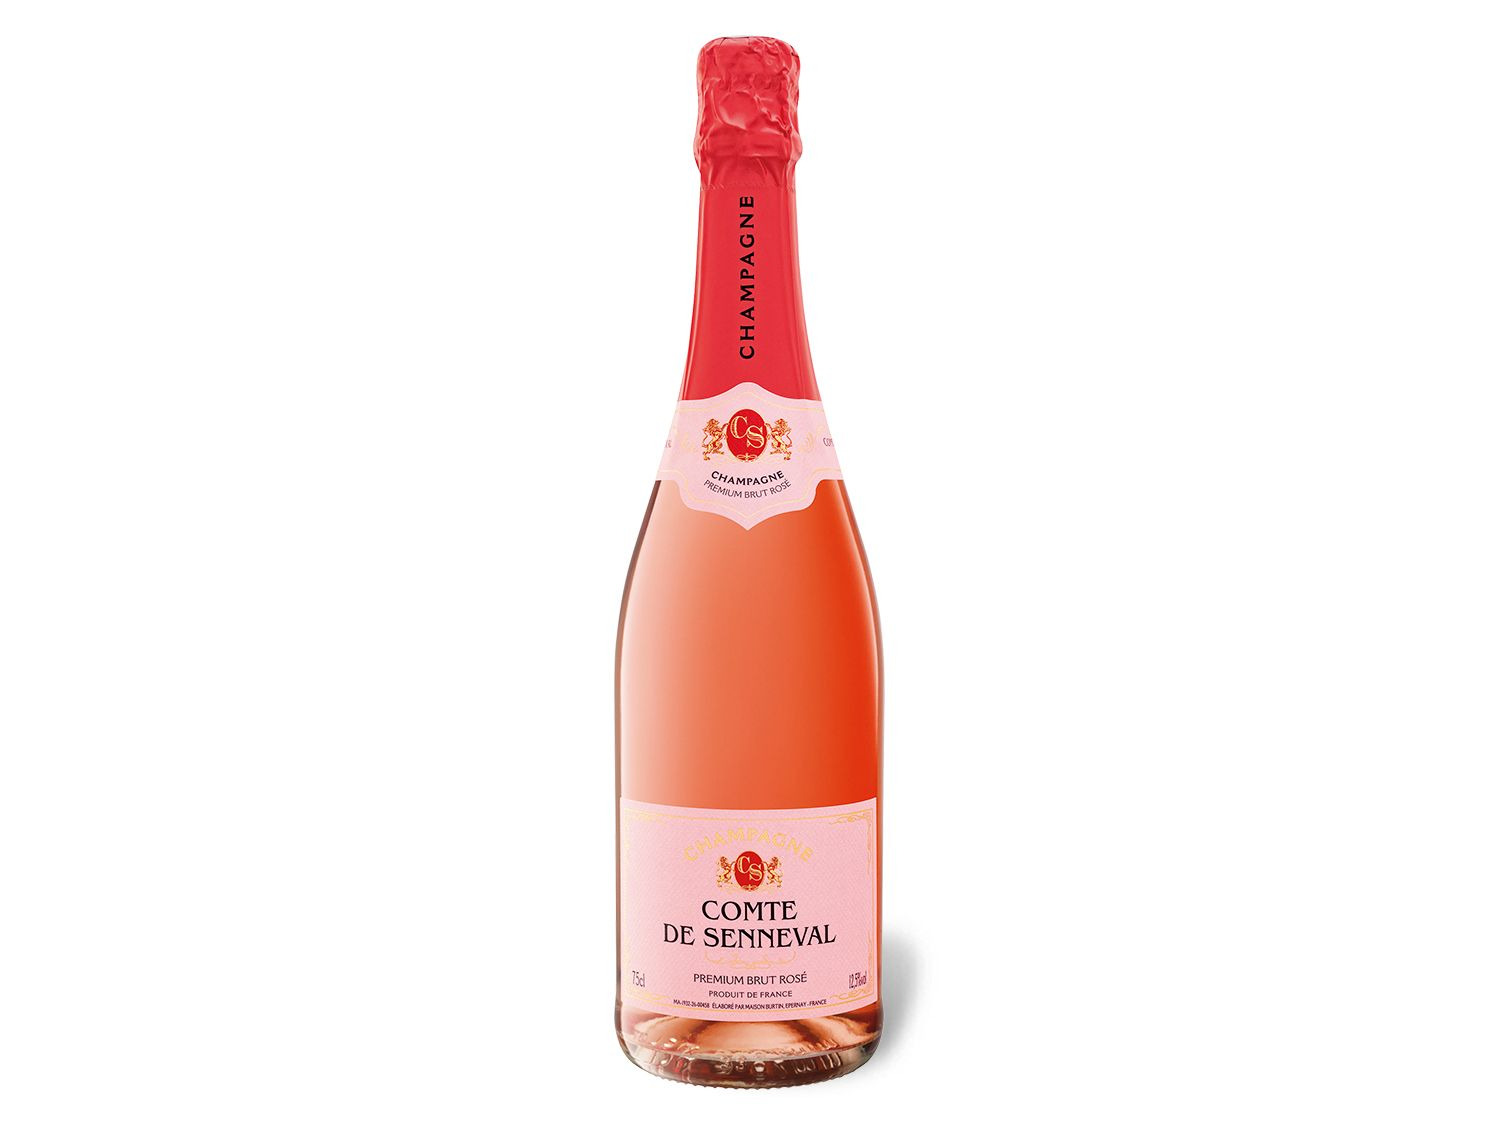 Champagner LIDL Premium Rosé, de Senneval Comte Brut |